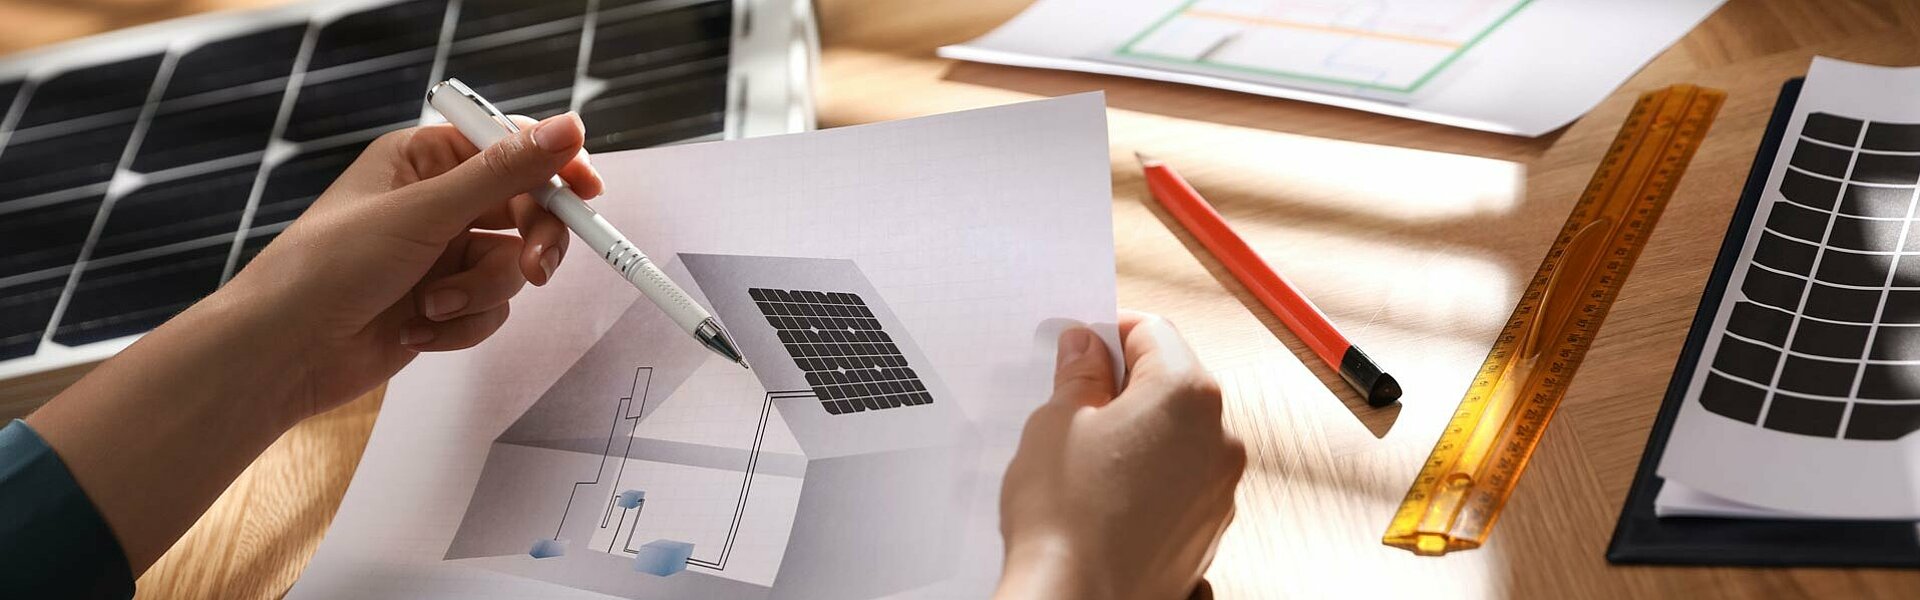 Planungsunterlagen für eine Photovoltaikanlage auf einem Wohnhaus ausgebreitet auf einem Tisch